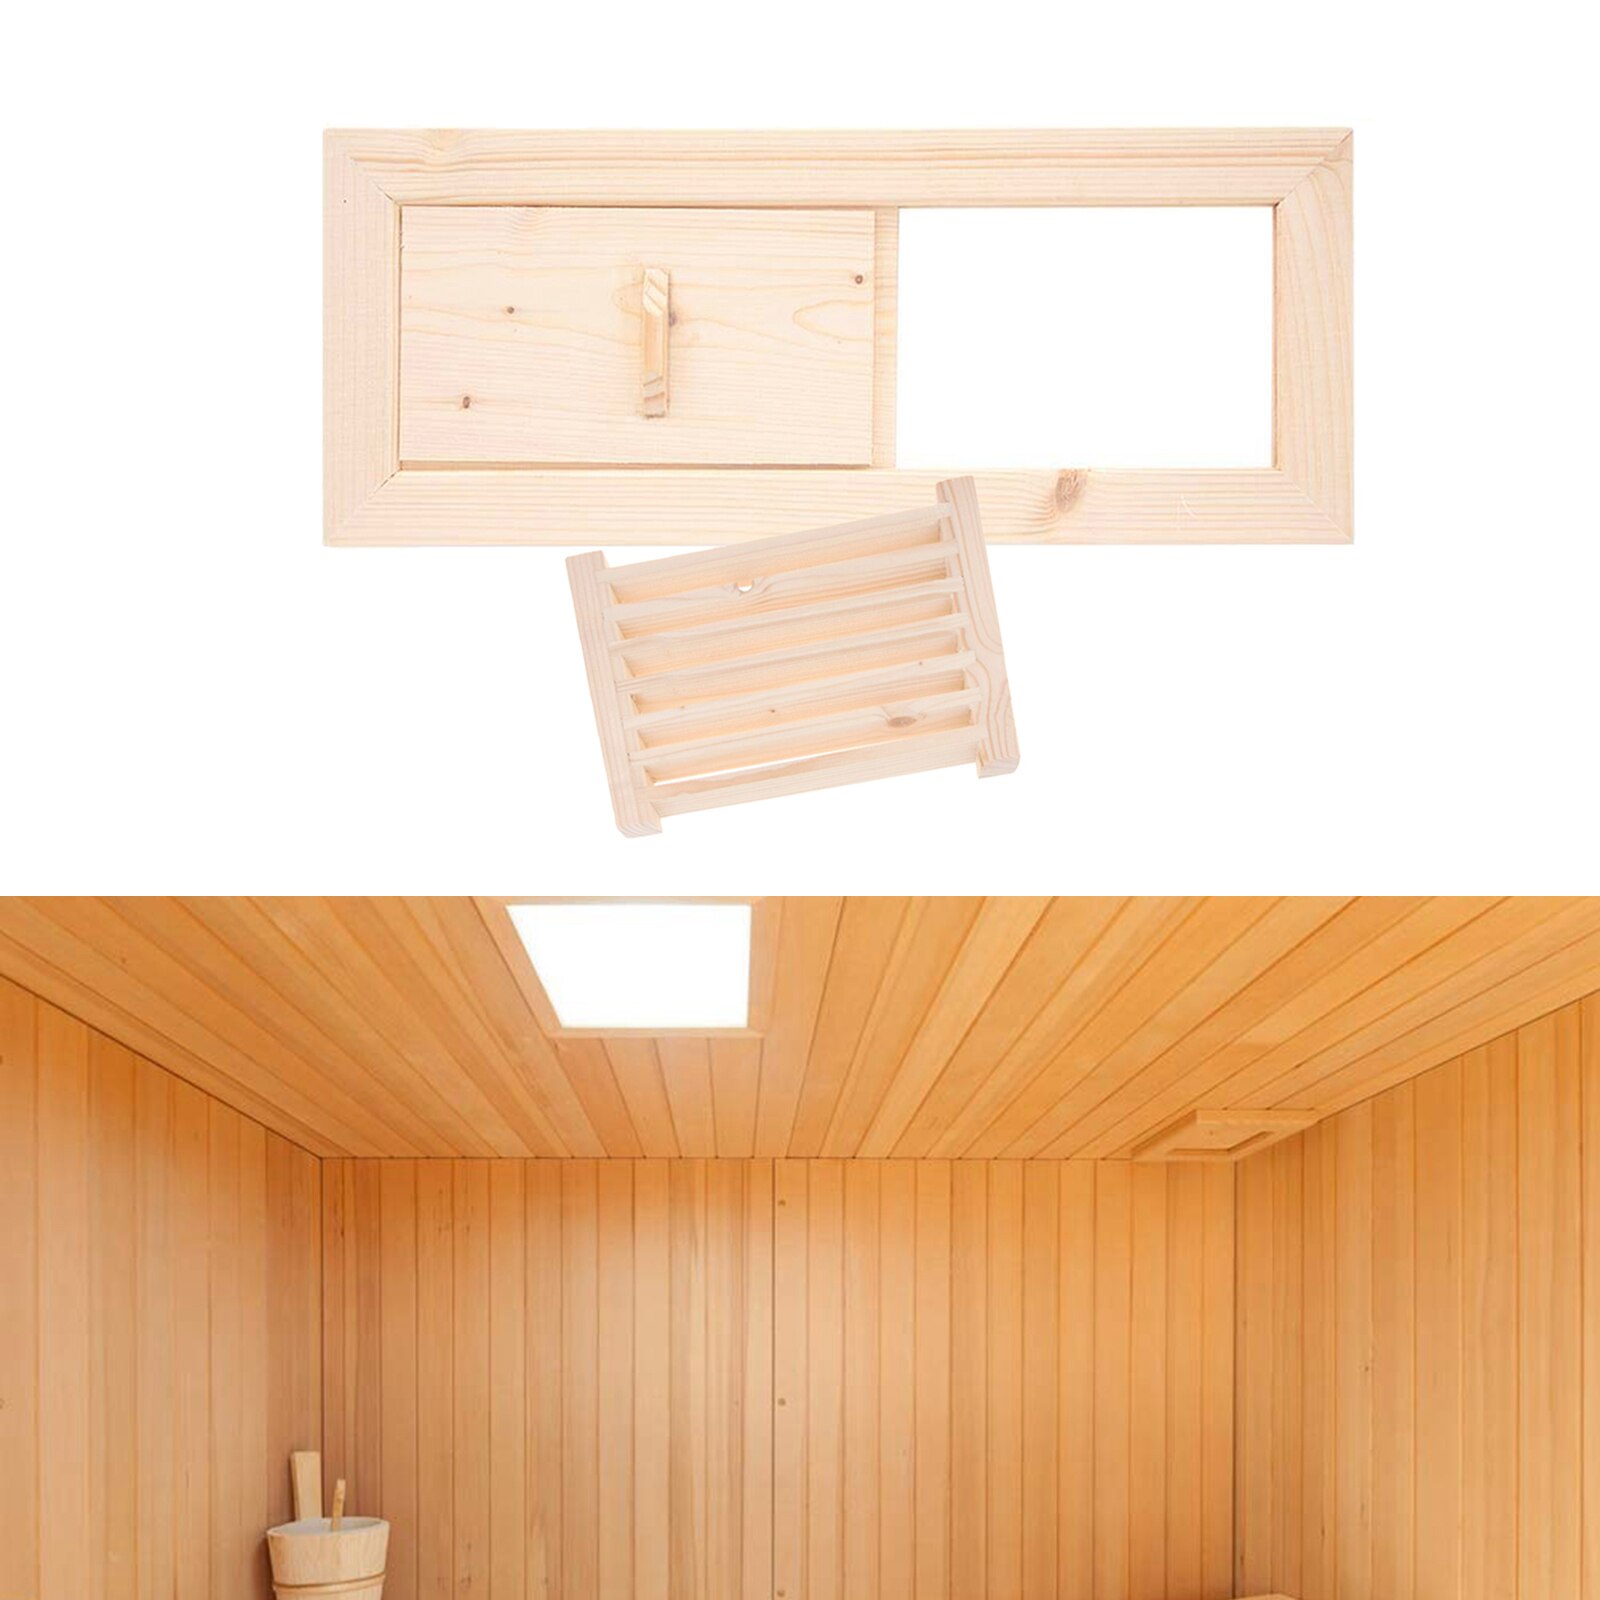 Gran sauna luft ventilation cedertræ væg udluftning sauna værelse dampbad tilbehør